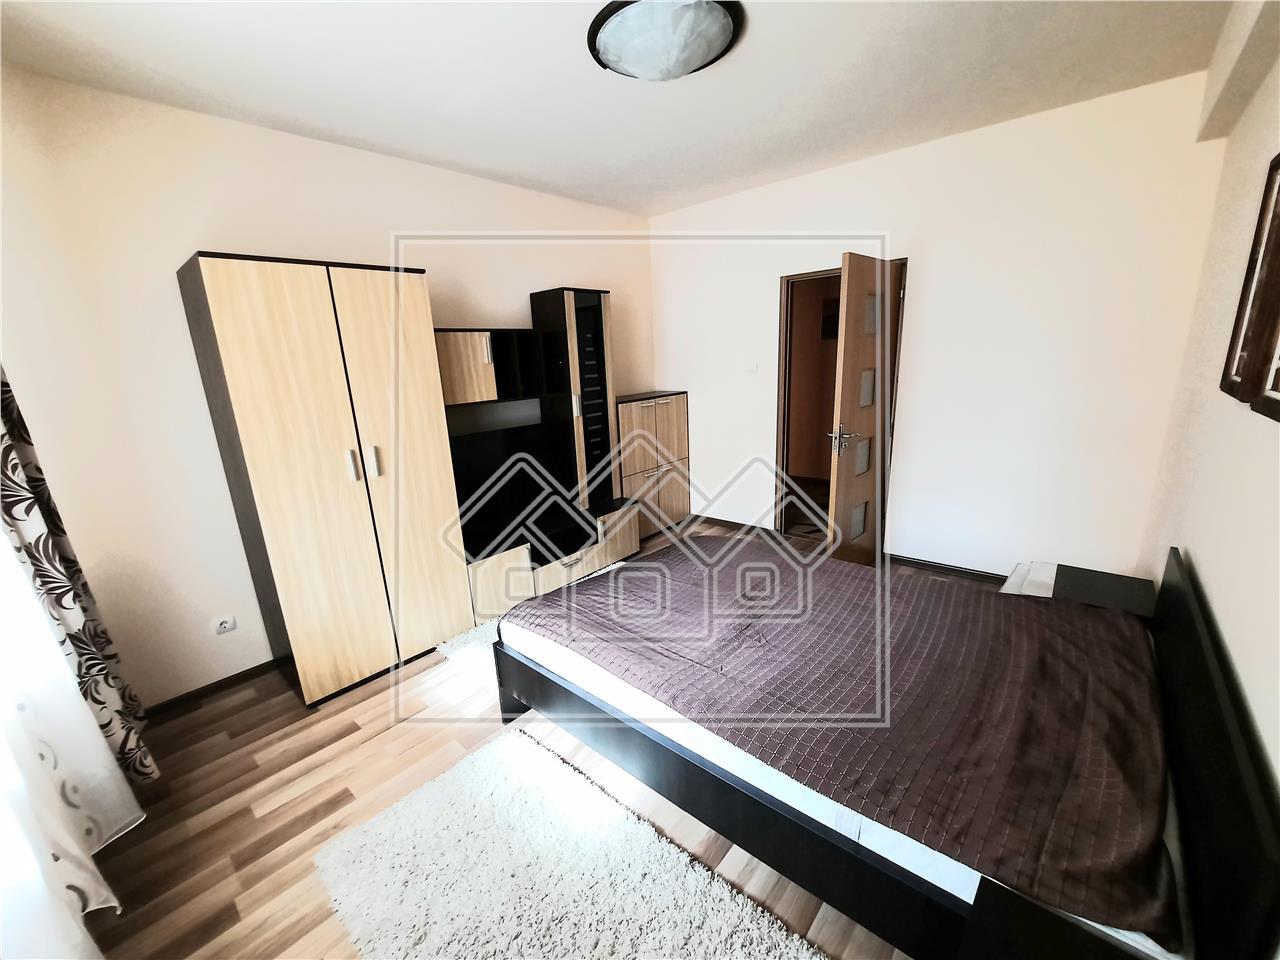 Wohnung zu vermieten in Alba Iulia - 3 Zimmer - Zentraler Bereich